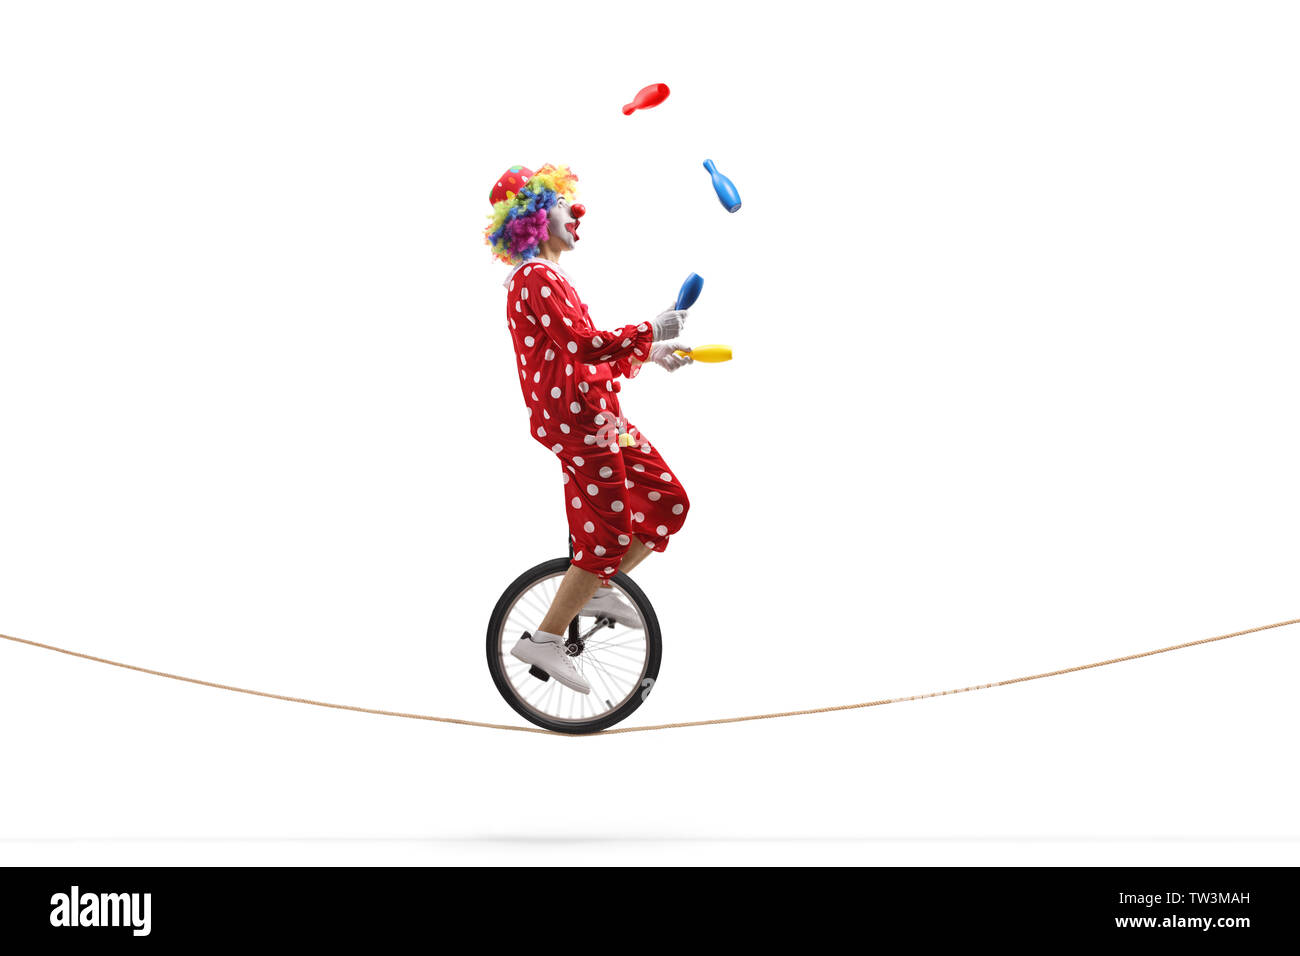 De toute la longueur d'un clown jonglant avec des clubs et de l'équitation un monocycle sur une corde isolé sur fond blanc Banque D'Images